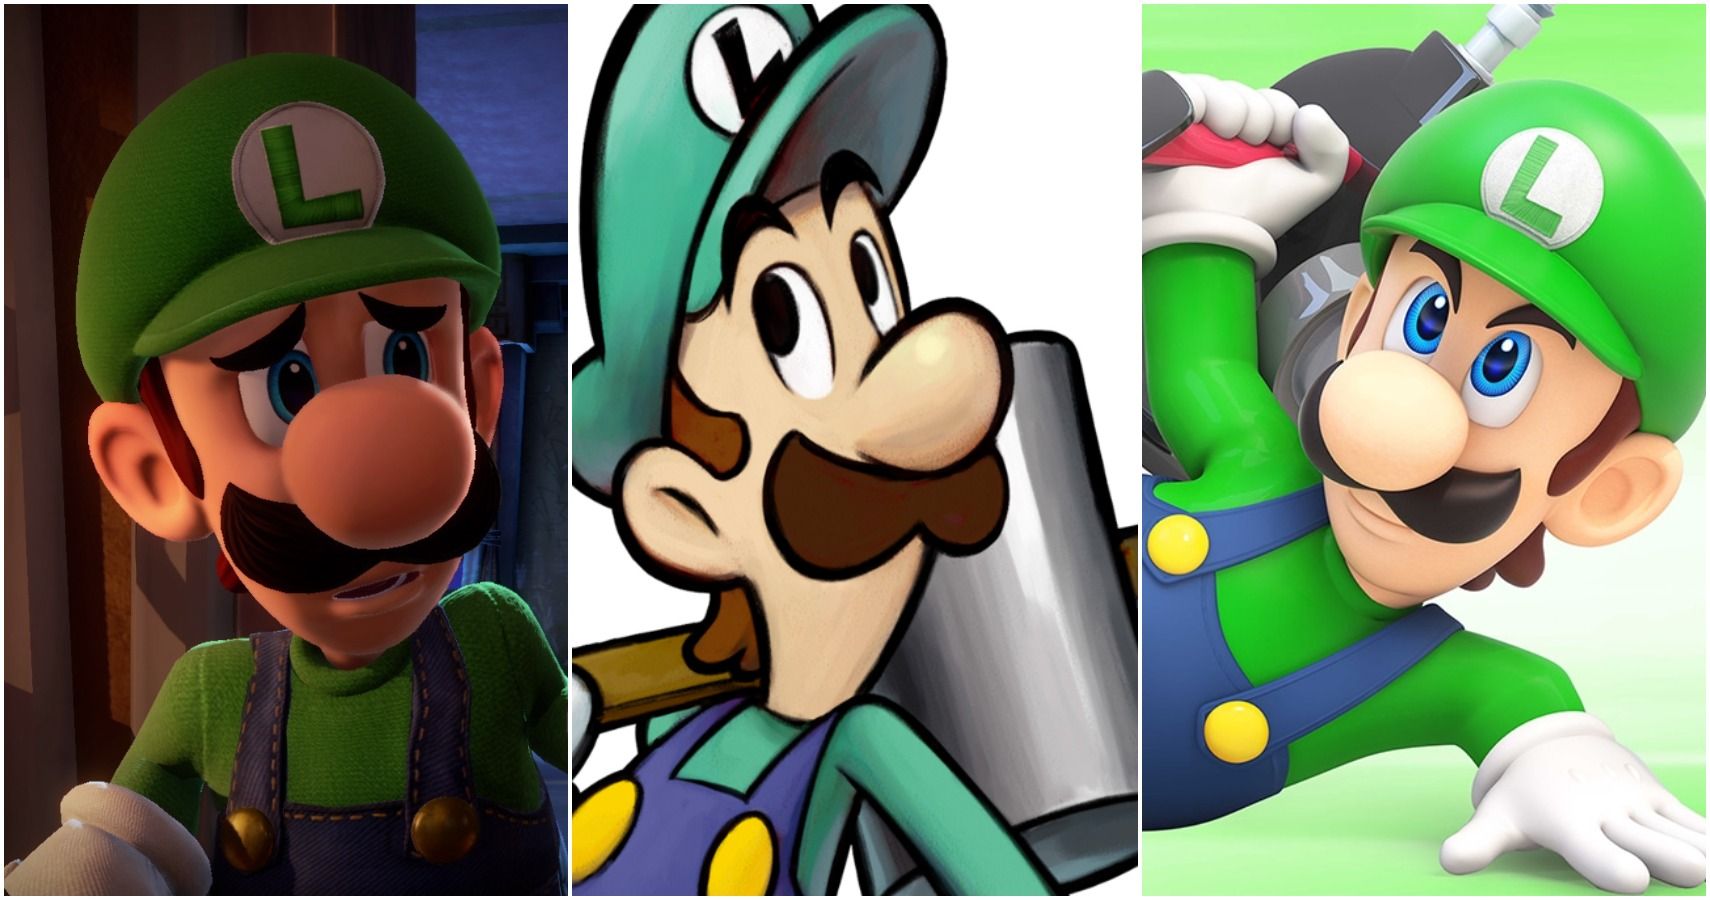 Super Mario Bros.: Wasanni 10 na Farko Luigi An Yi Wasa A ciki